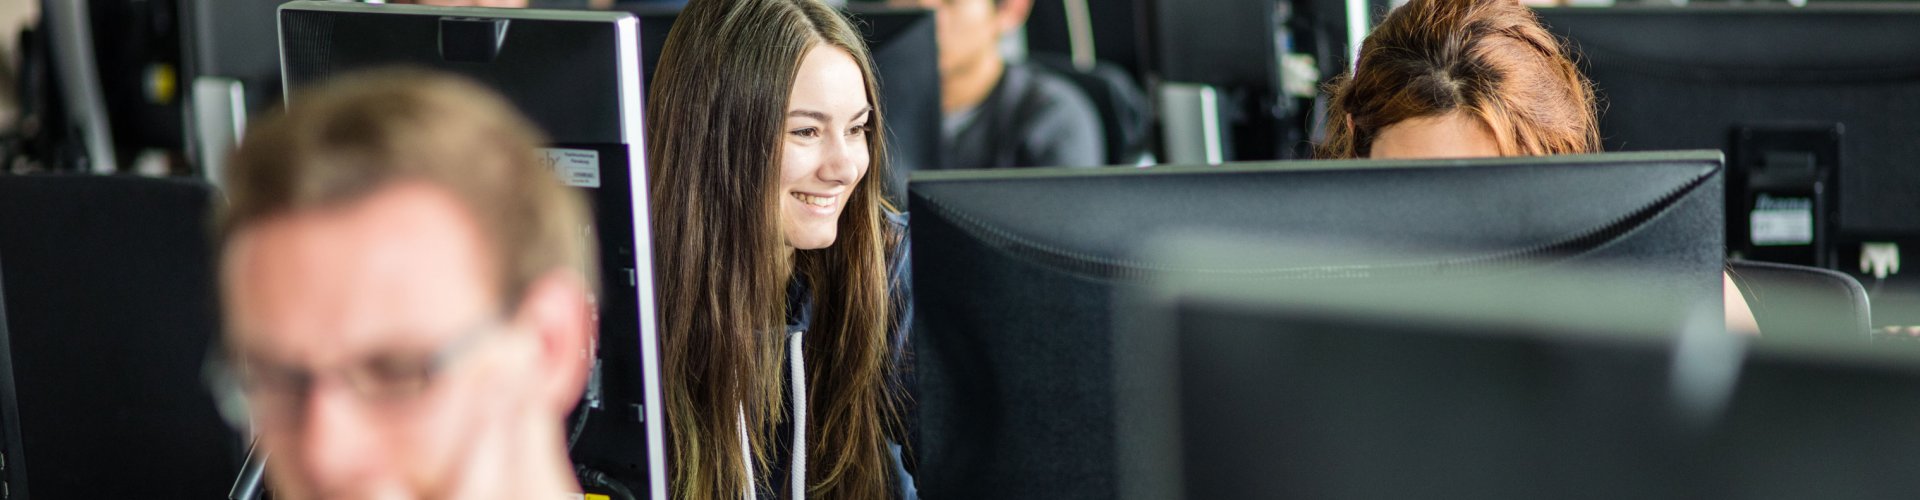 Blick auf ein Computerlabor, in dem mehrere Studierende an Rechnern arbeiten. In der ersten Reihe ist unscharf ein blonder Student zu erkennen, im Fokus in der Reihe hinter ihm eine dunkelhaarige, lachende Studentin.